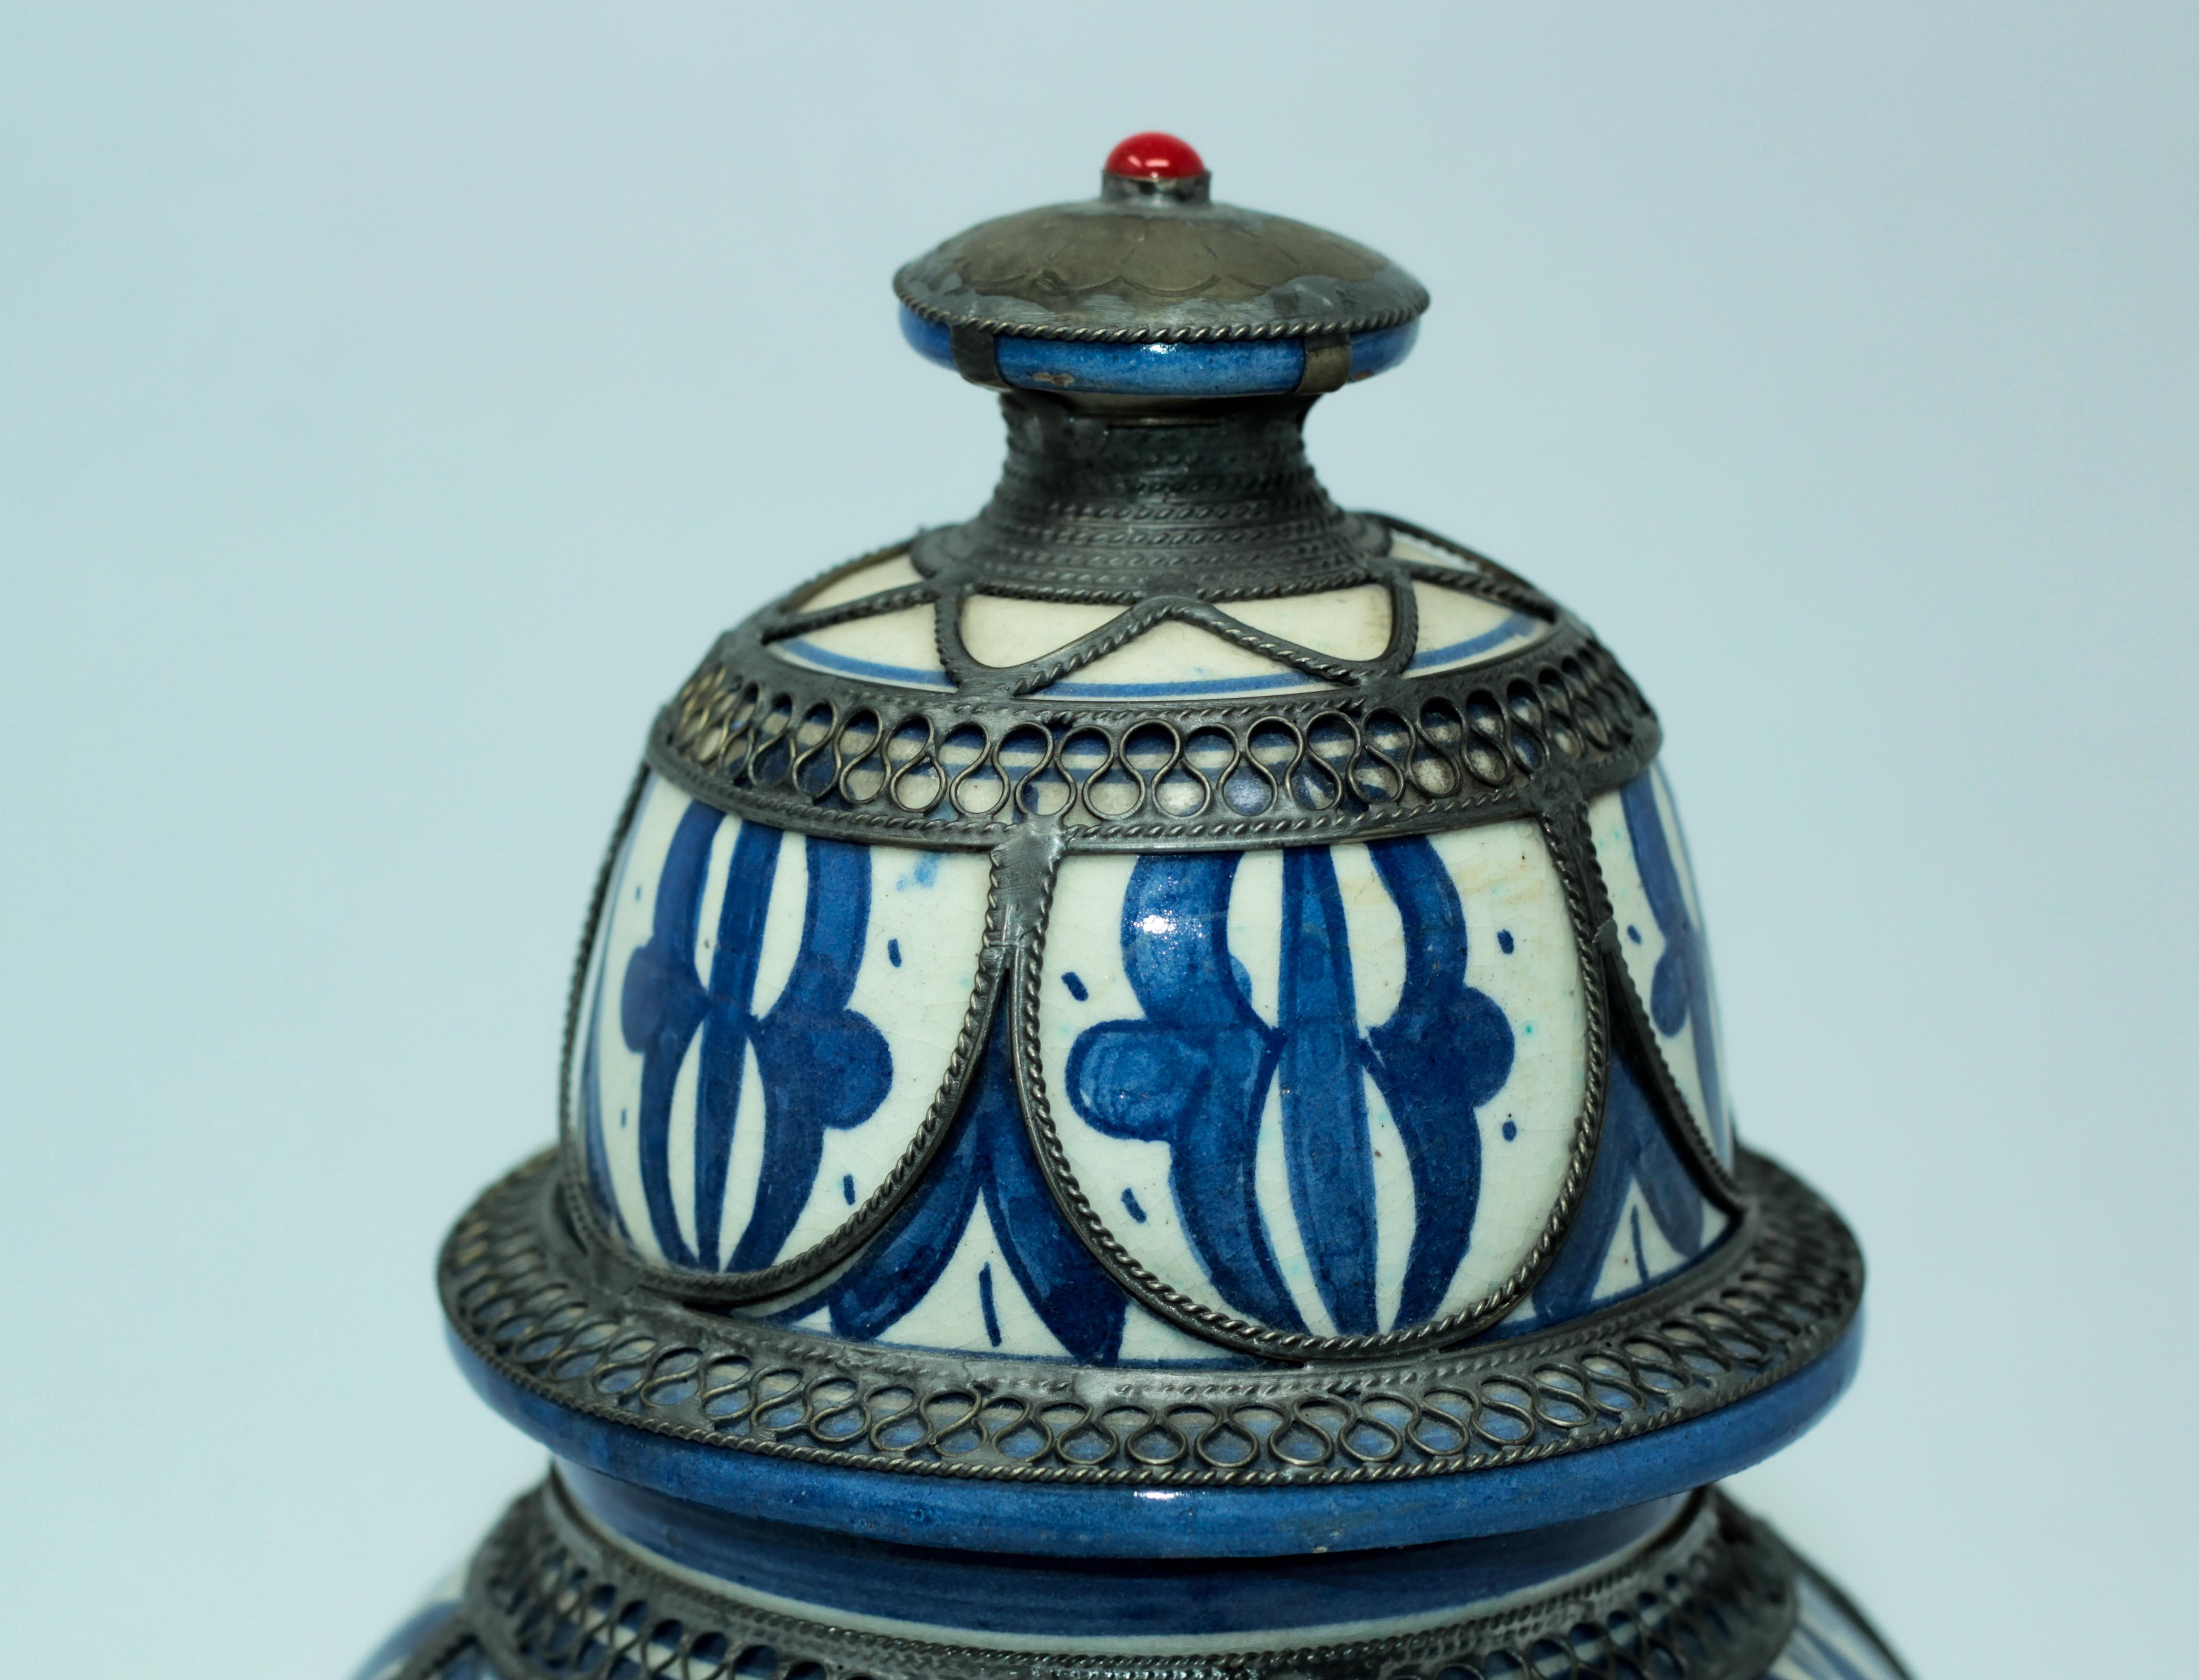 Fabelhafte handgefertigte antike marokkanische Keramikvase im maurischen Stil, verziert mit feiner filigraner Silber-Nickel-Arbeit überlagert.
Die Farbe der Keramik ist als Bleu de Fez bekannt.
Vase aus blau-weißer Keramik mit filigranem